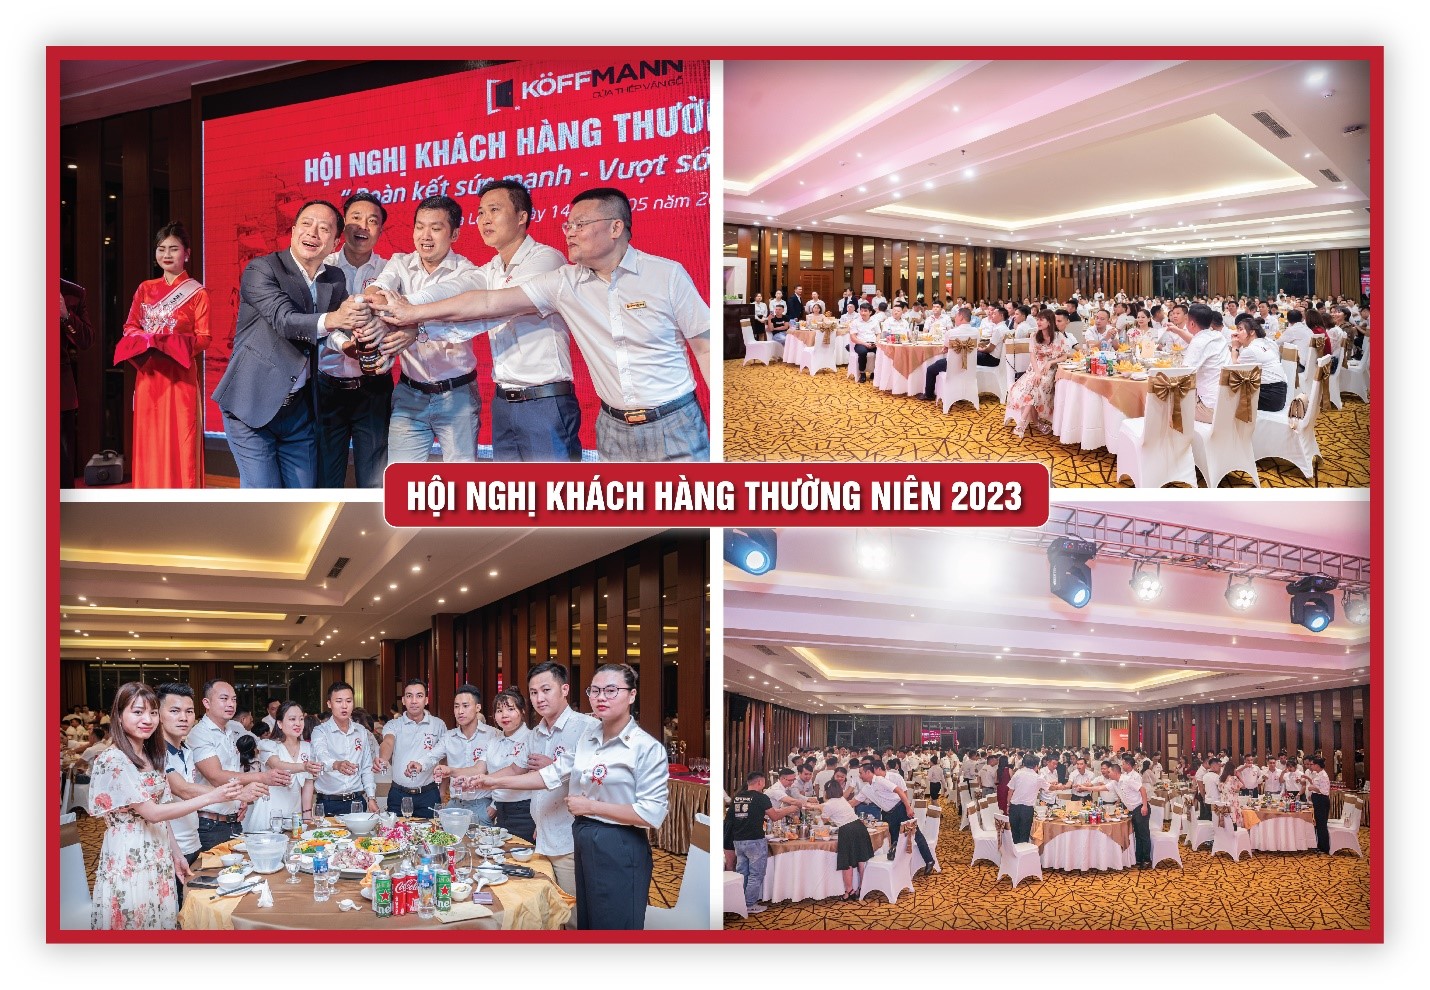 Koffmann Việt Nam tổ chức hội nghị khách hàng thường niên 2023 - 1